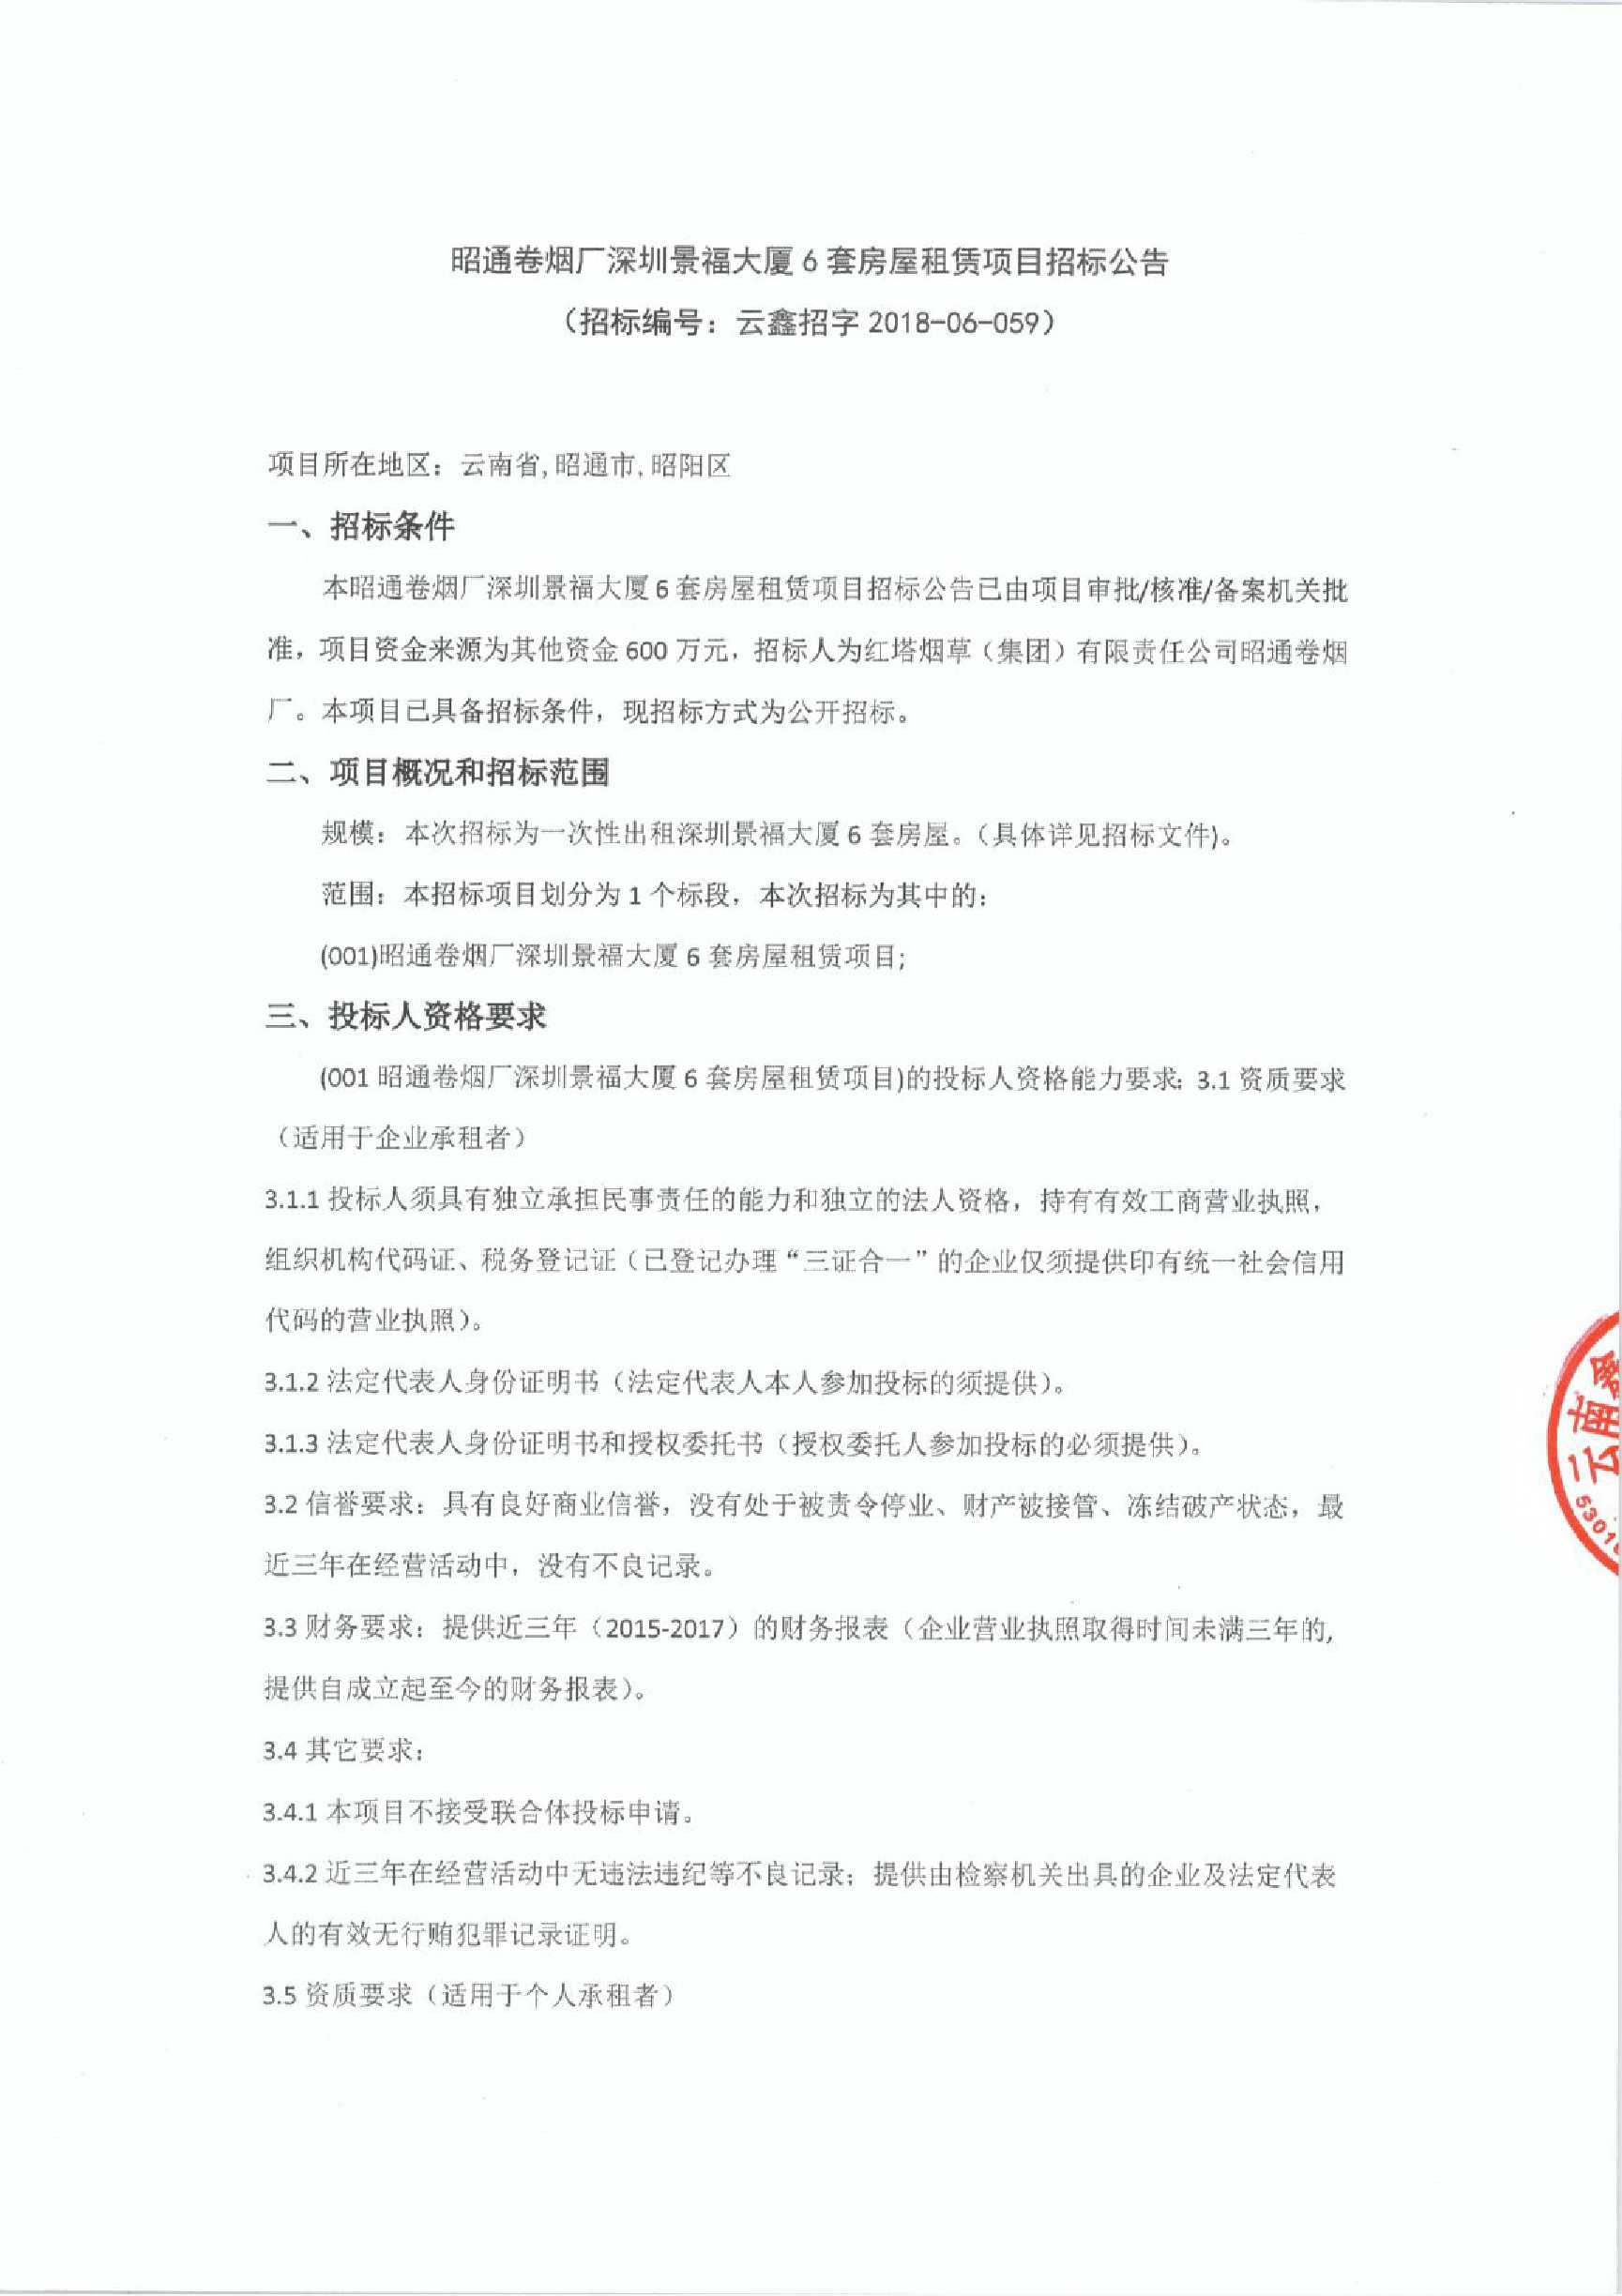 昭通卷烟厂深圳景福大厦6套房屋租赁项目招标公告